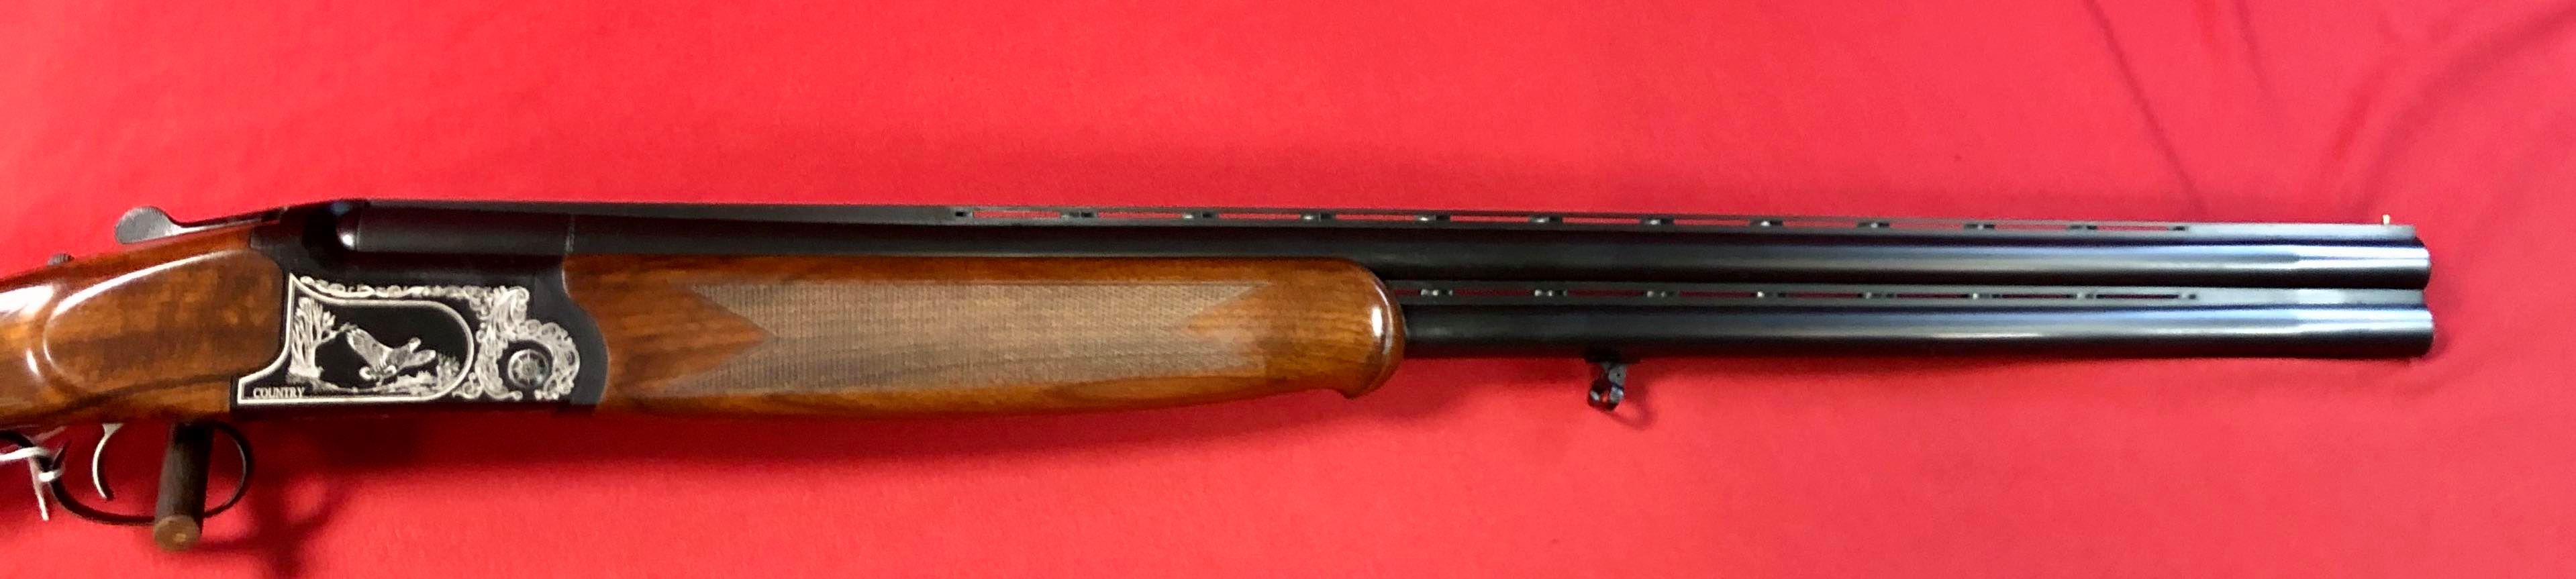 Fusil Contry en calibre 12/76 avec chocks interchangeables.

580 euro